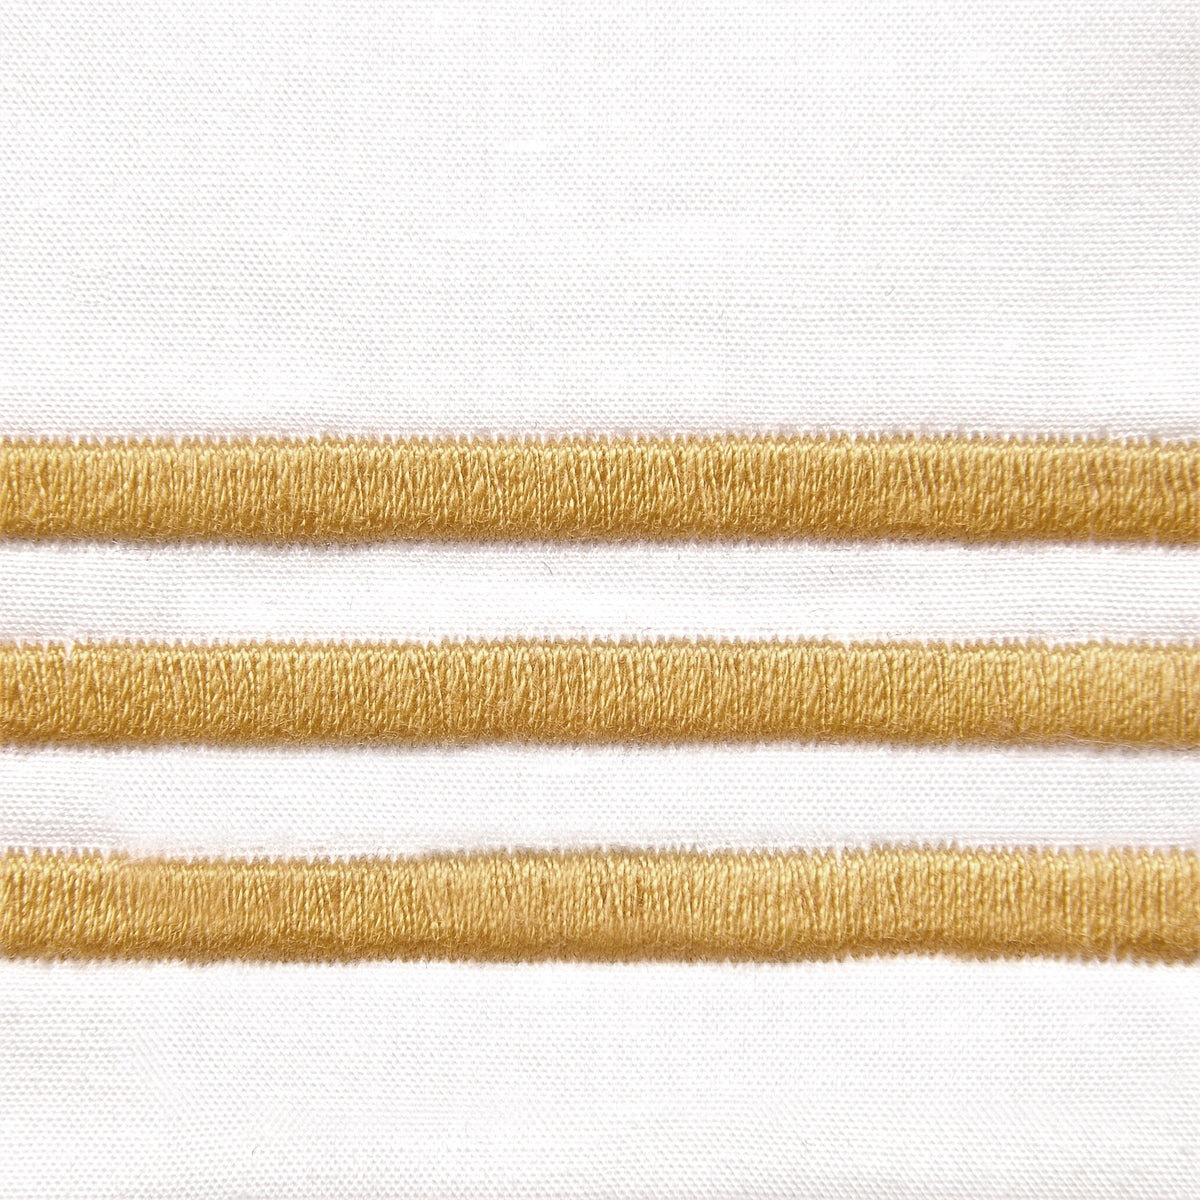 Fabric Closeup of Signoria Platinum Percale Bedding in White/Gold Color